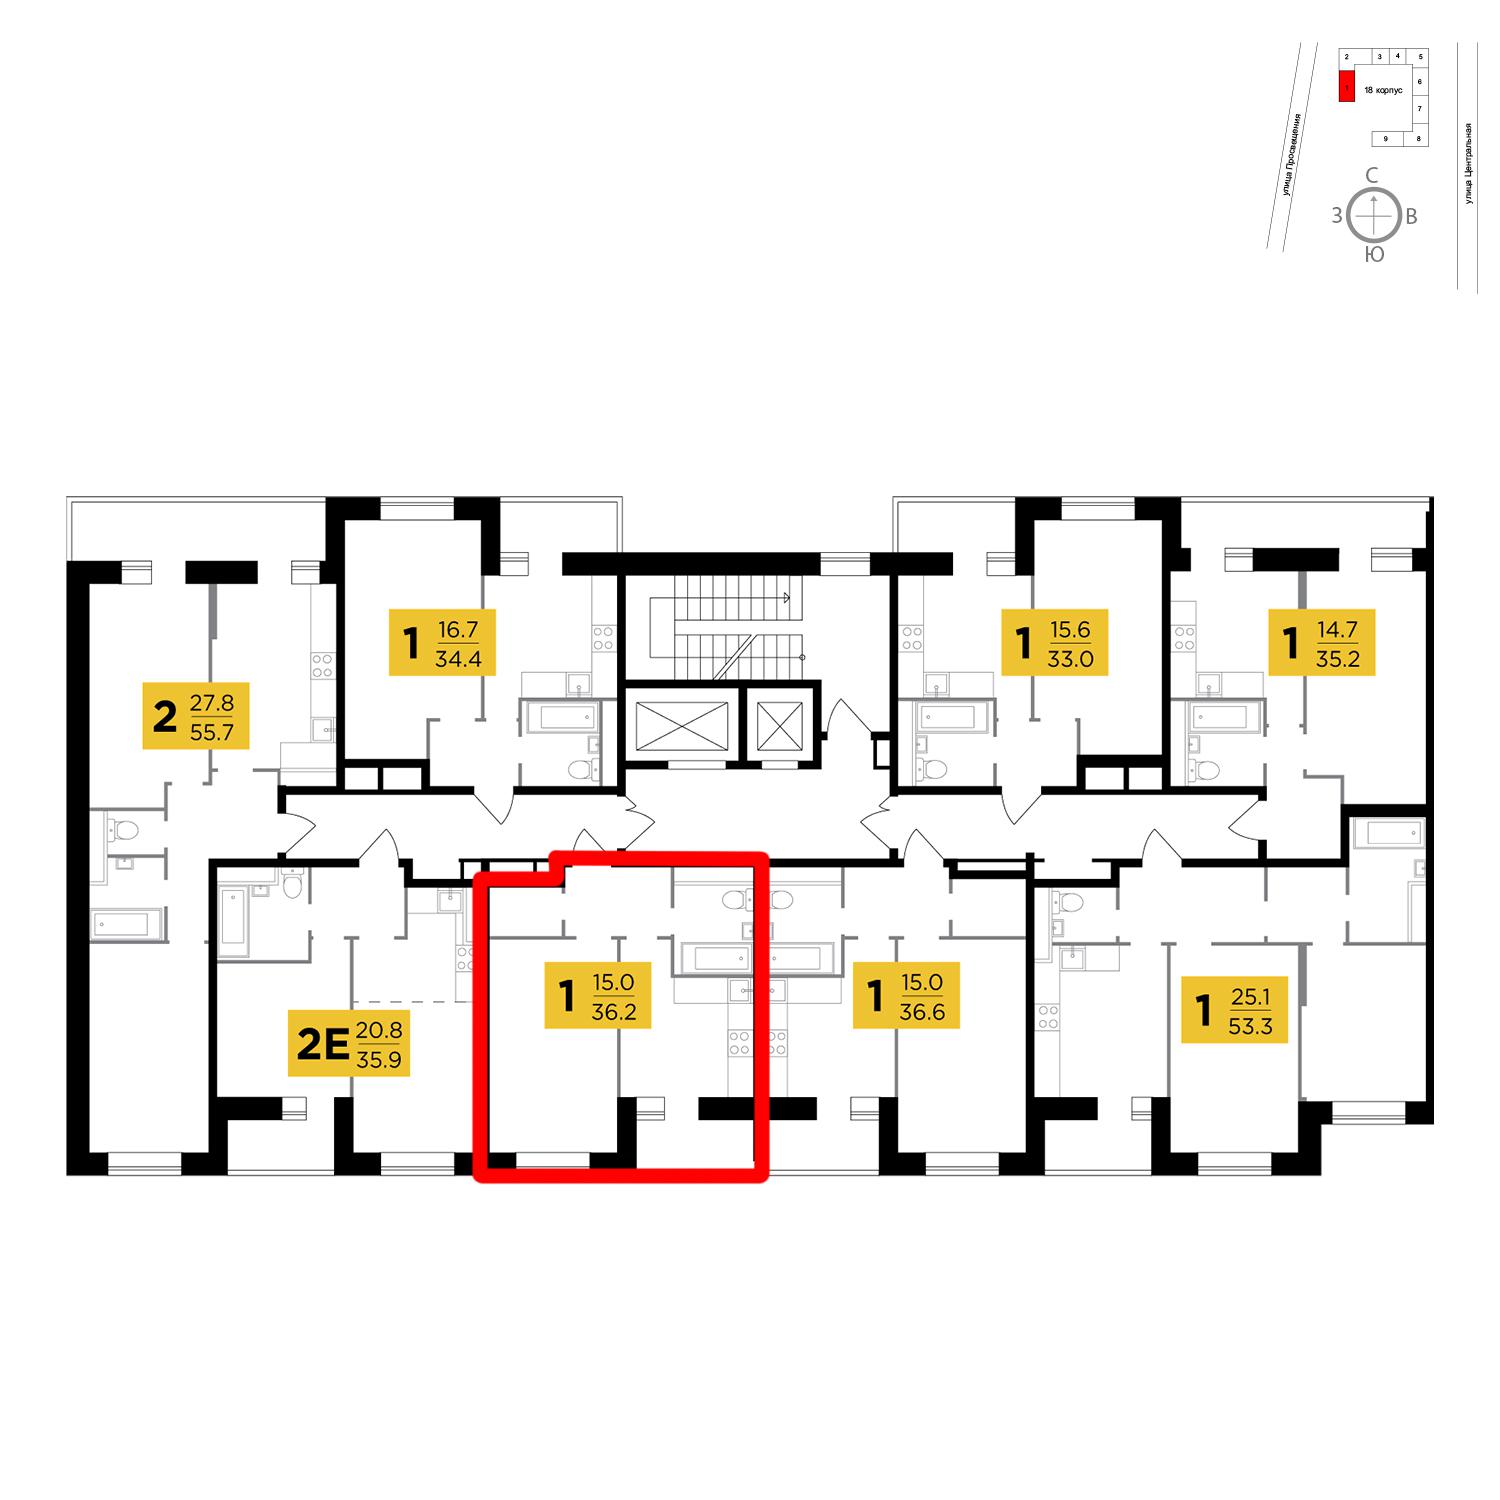 Продаётся 1-комнатная квартира в новостройке 36.2 кв.м. этаж 13/16 за 2 688 899 руб 